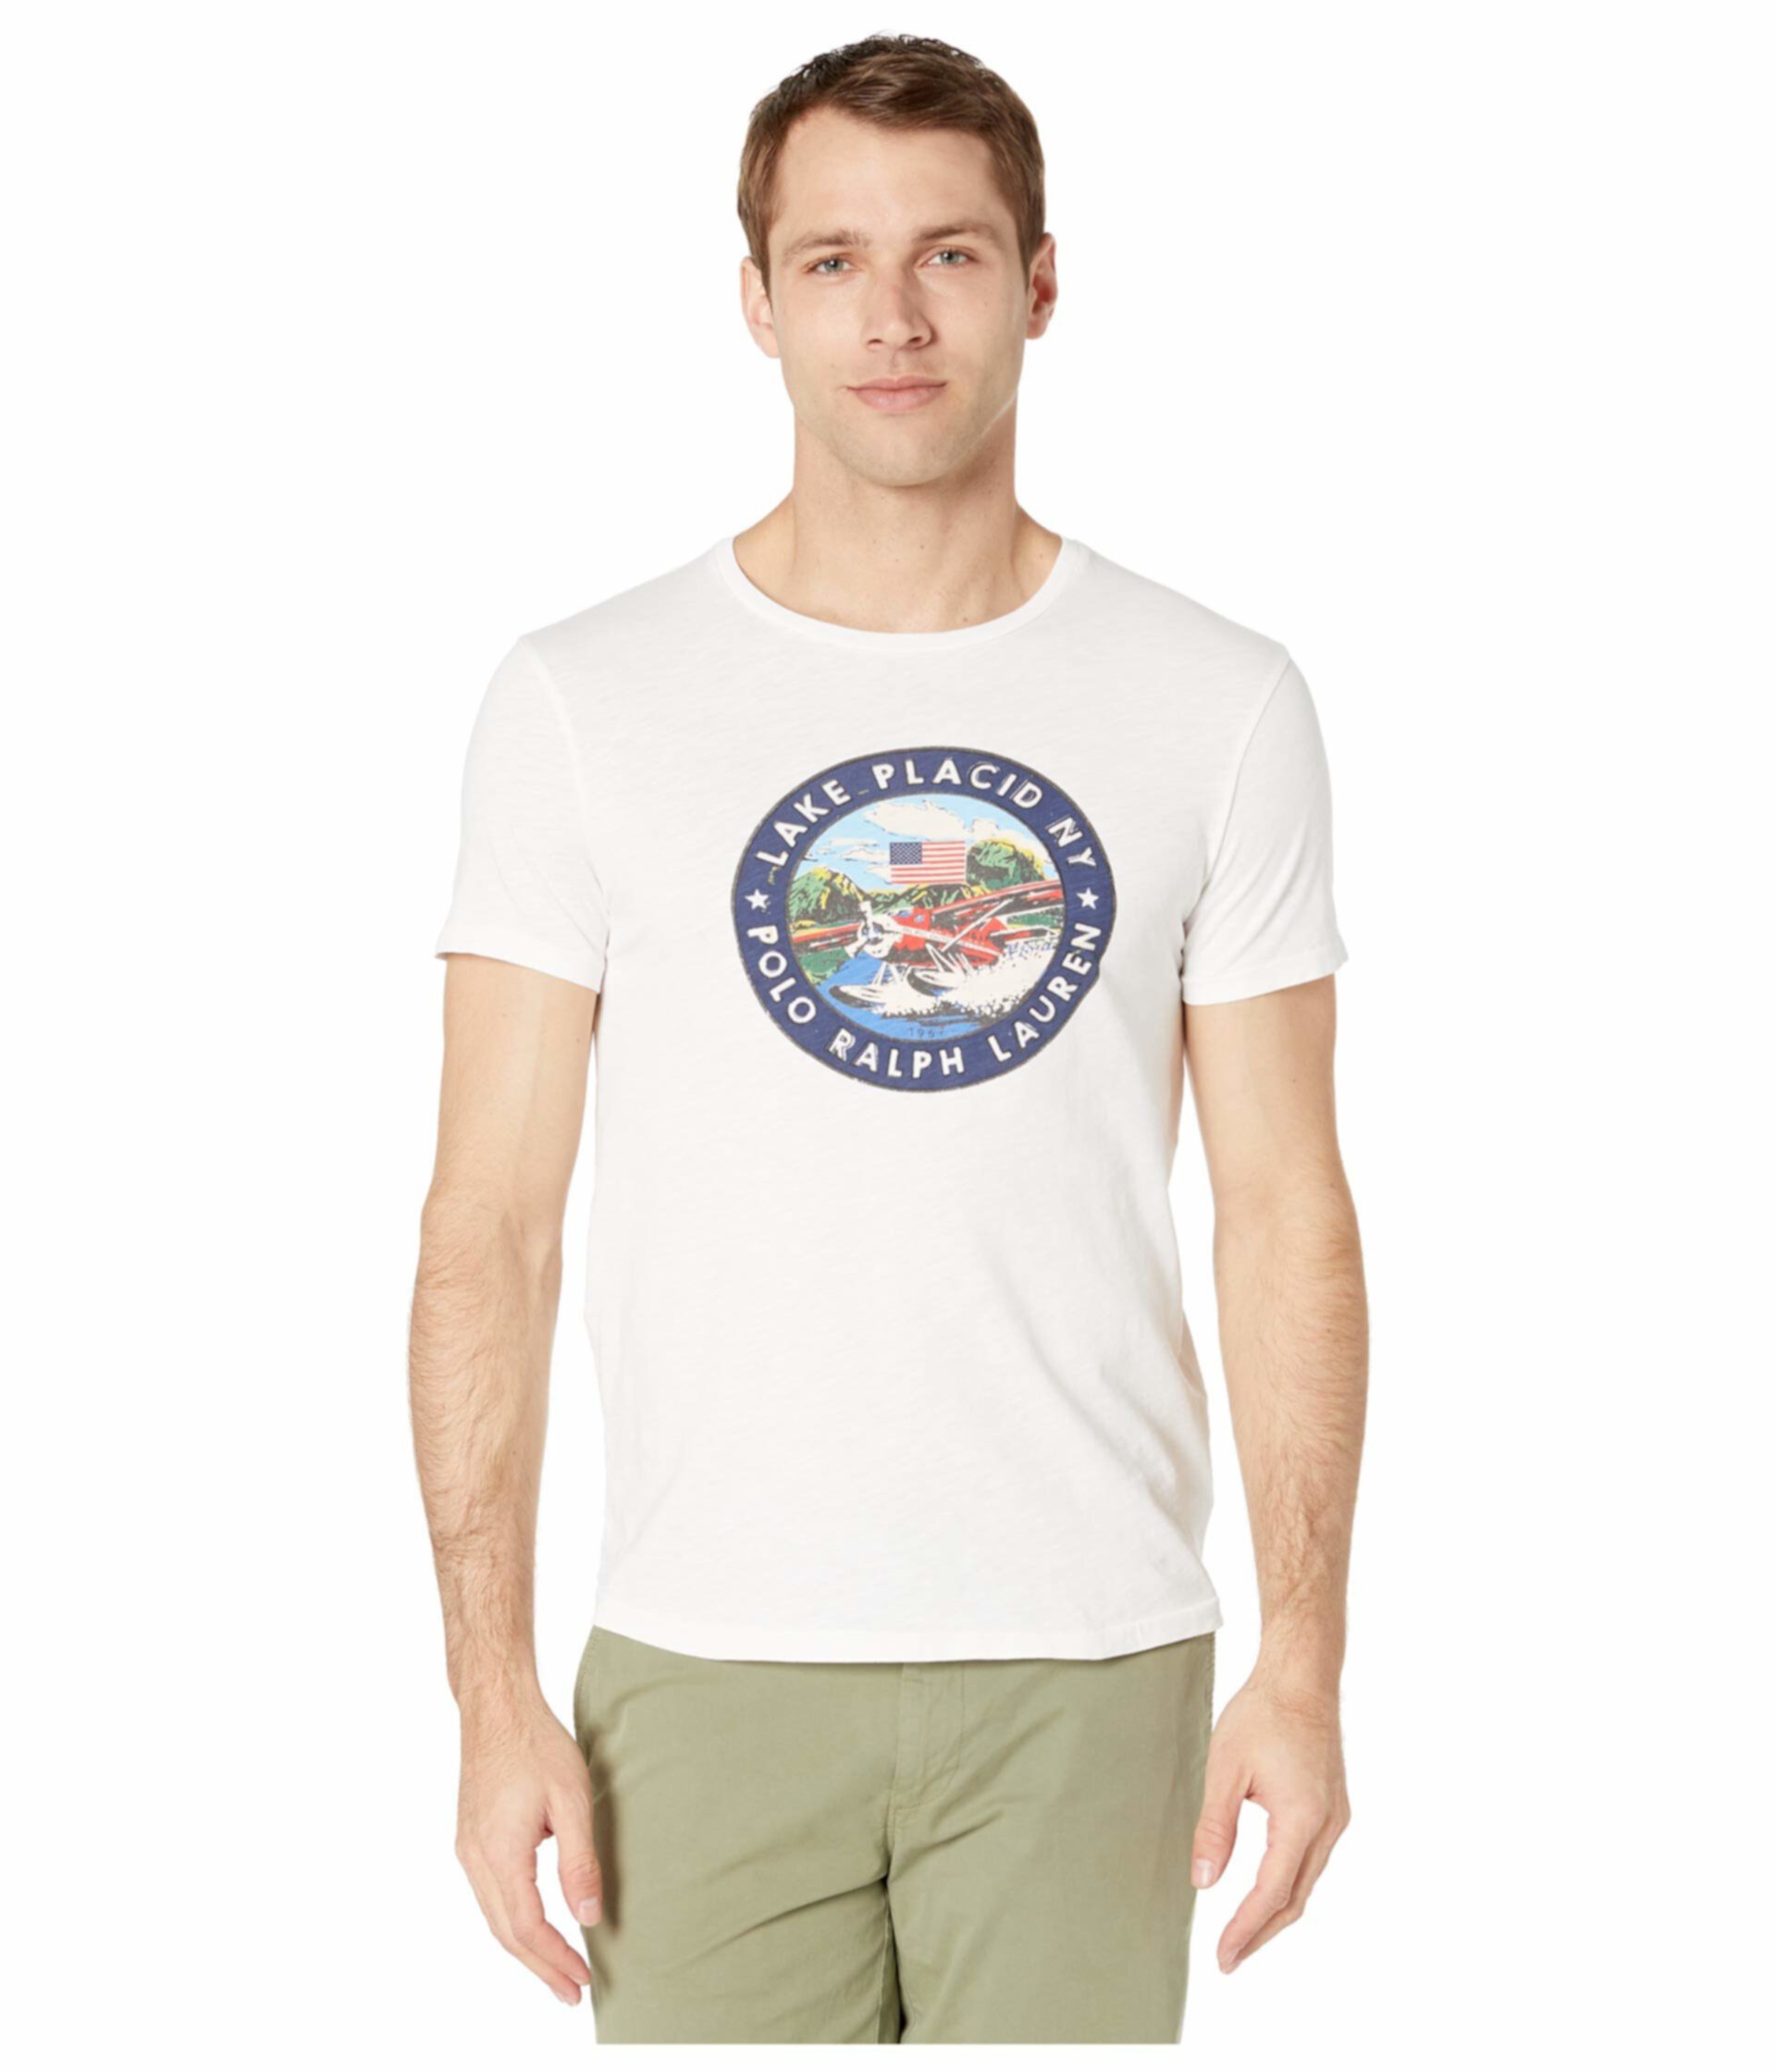 Тонкая футболка с рисунком Custom Ralph Lauren